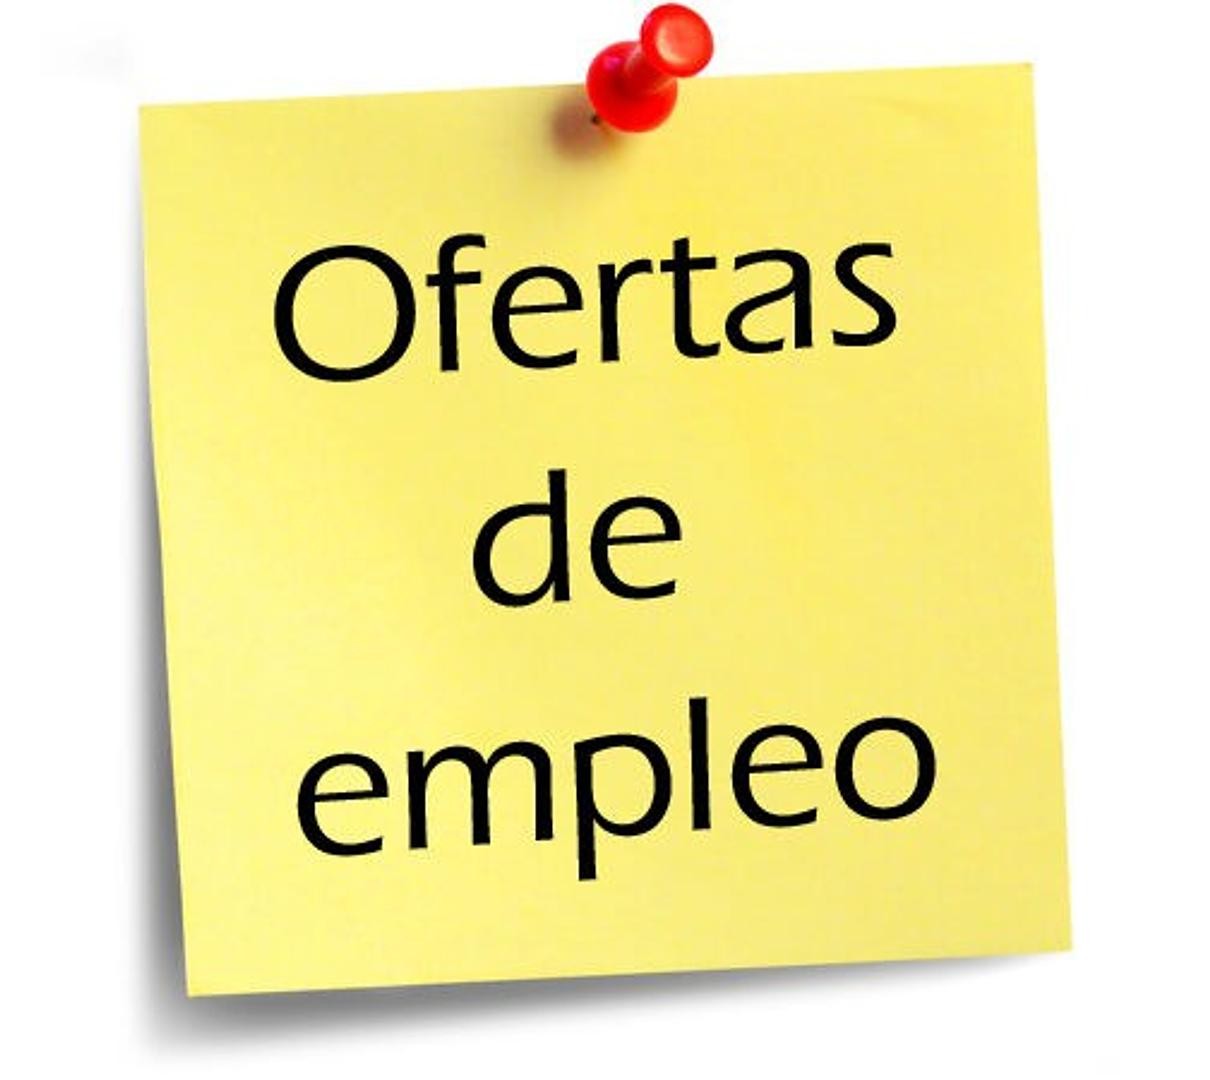 empleos disponibles - SE BUSCA PORTERO PARA TRABAJAR EN HORARIO DE 7:00am A 7:00pm SOLO HOMBRES